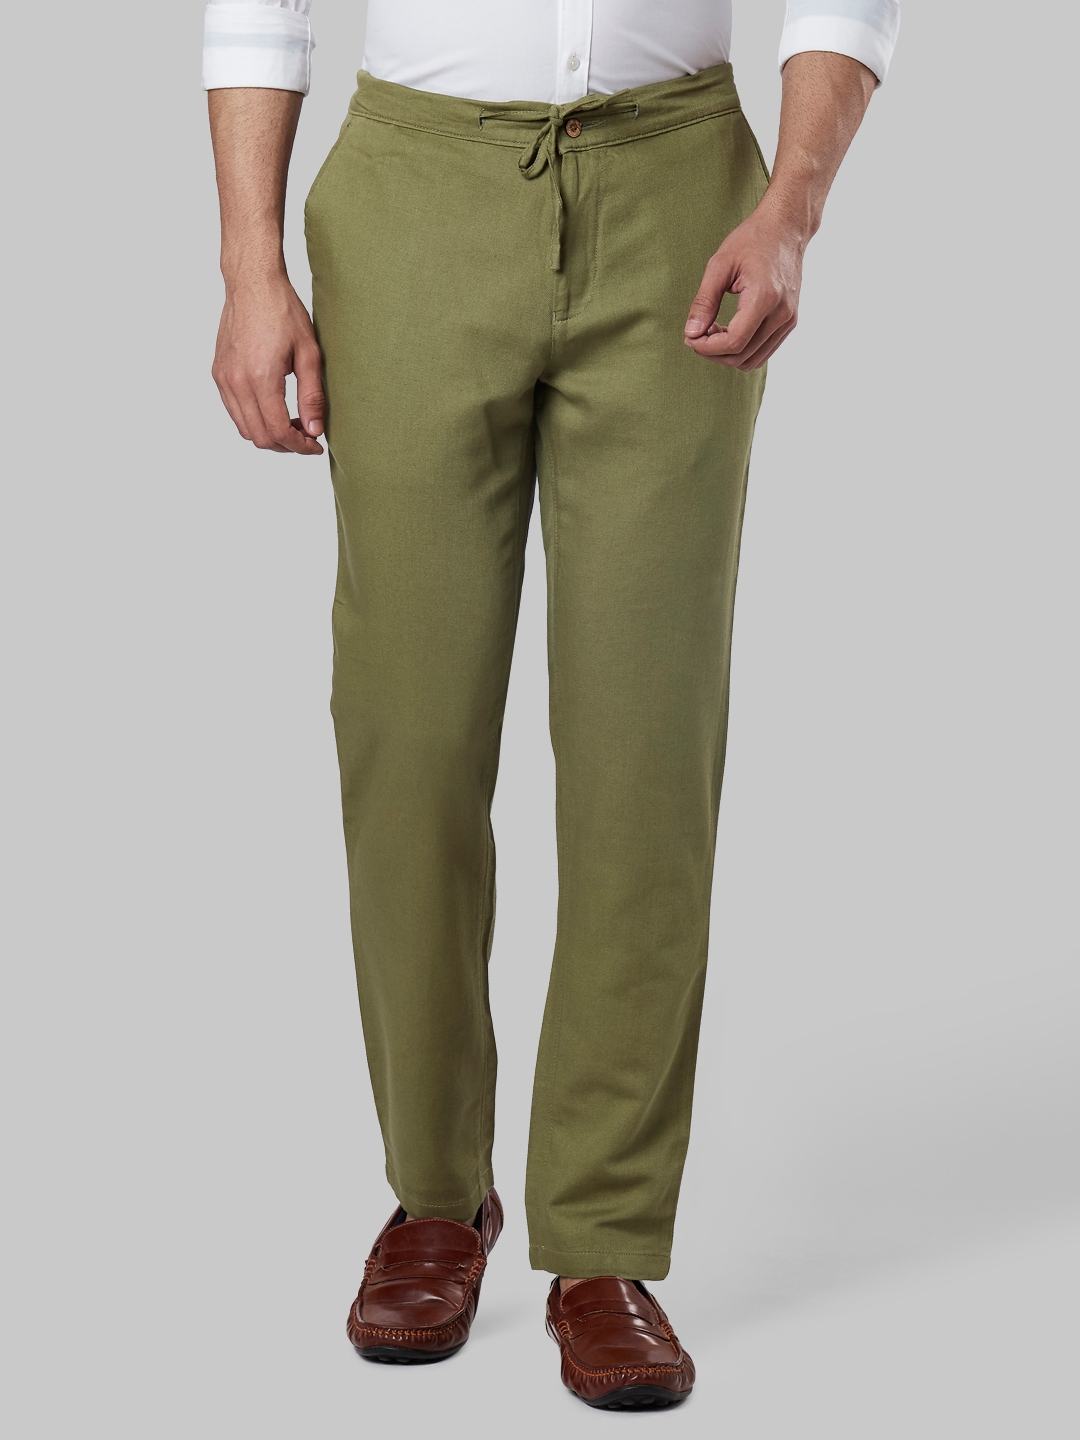 Buy Formal Raymond trousers - size 34 Online for Women/Men/Kids in India -  Etashee